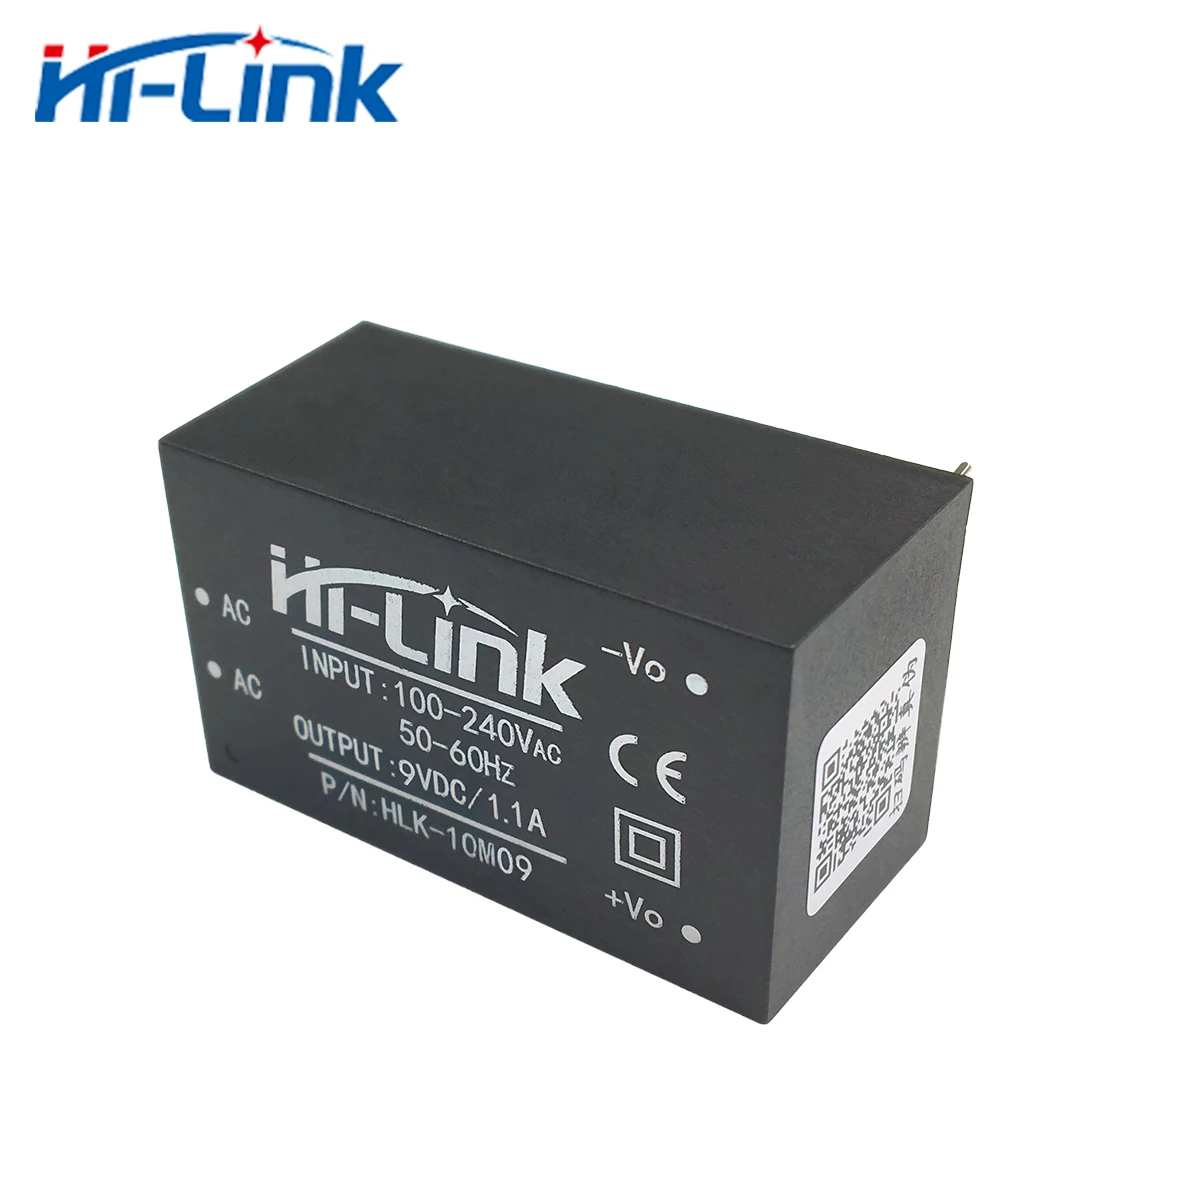 Envío gratis de Hi-Link 2pcs 220v 9V 10W AC DC aislado hogar inteligente compacto de conmutación de potencia mini supplymodule HLK-10M09 Imagen 3